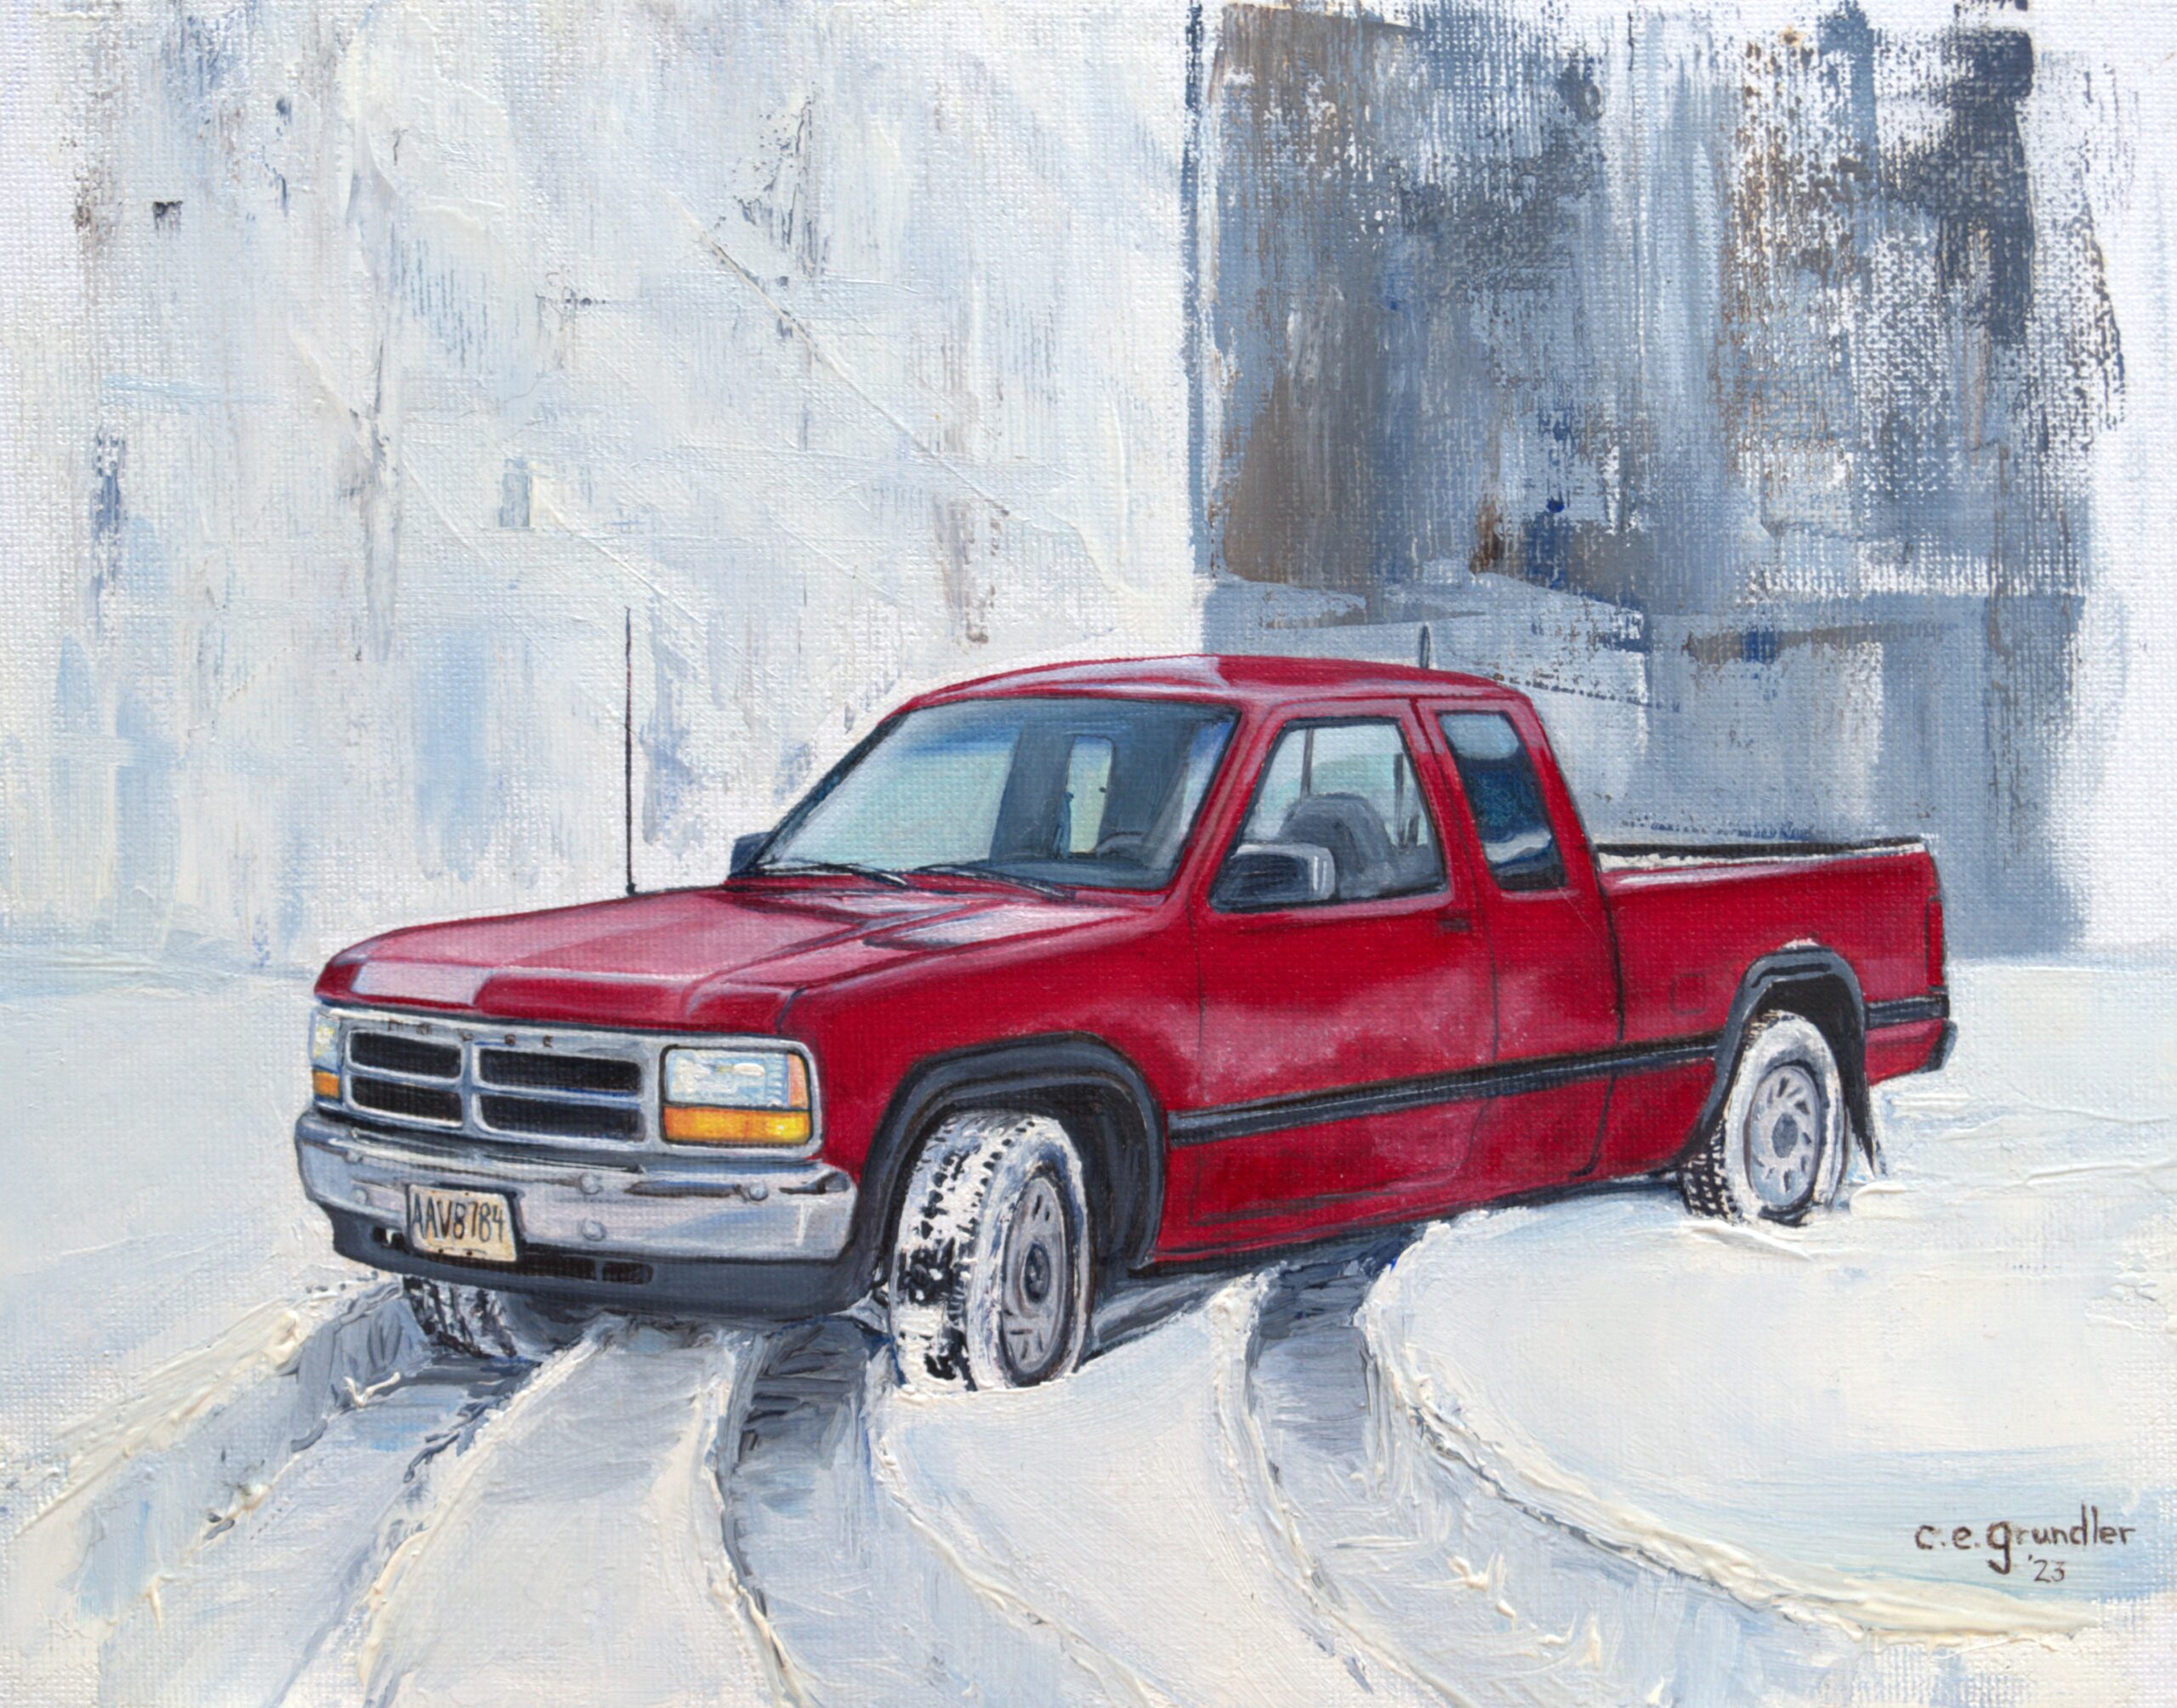 ’93 Dodge Dakota in the snow